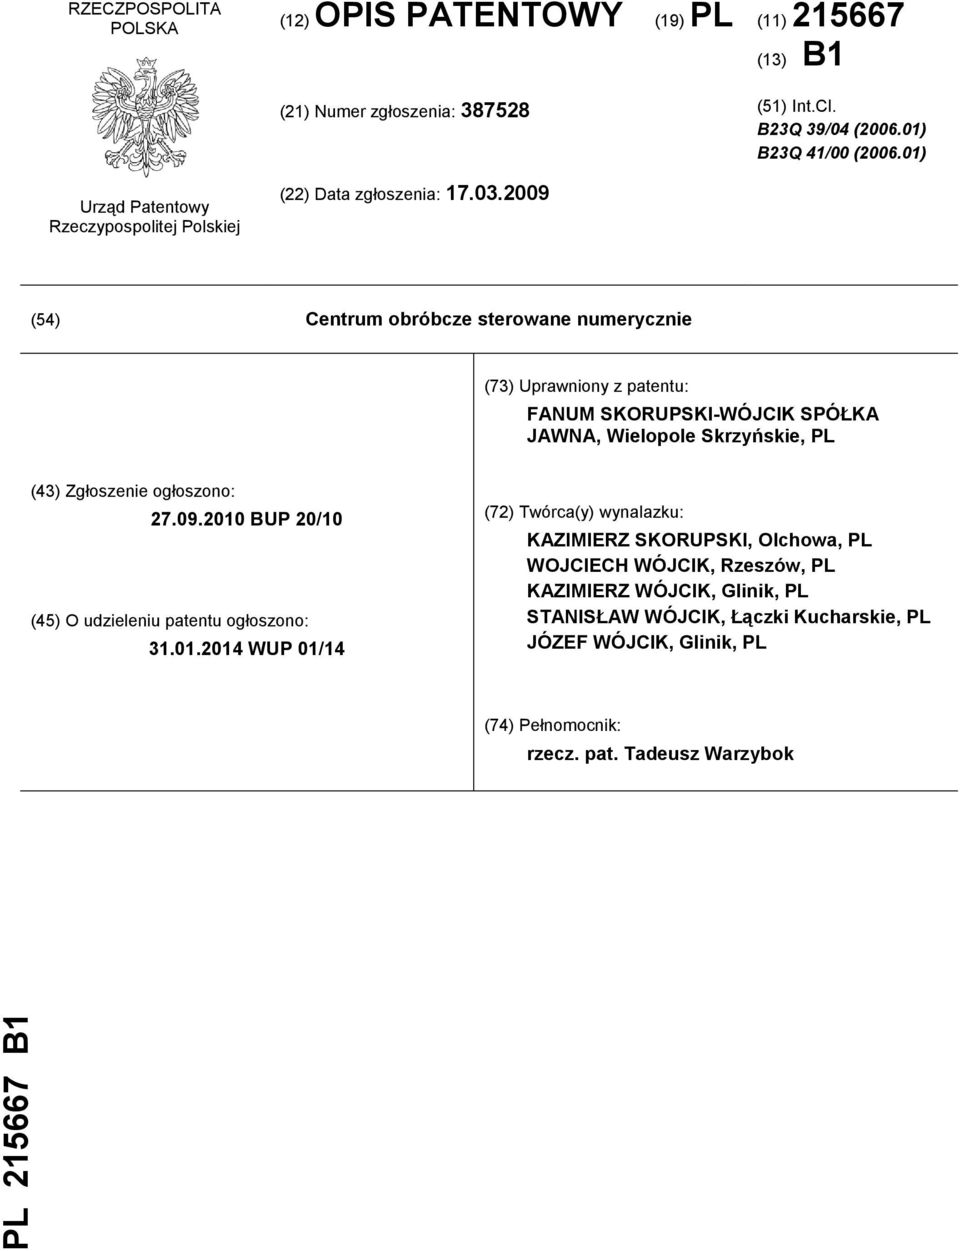 2009 (54) Centrum obróbcze sterowane numerycznie (73) Uprawniony z patentu: FANUM SKORUPSKI-WÓJCIK SPÓŁKA JAWNA, Wielopole Skrzyńskie, PL (43) Zgłoszenie ogłoszono: 27.09.2010 BUP 20/10 (45) O udzieleniu patentu ogłoszono: 31.